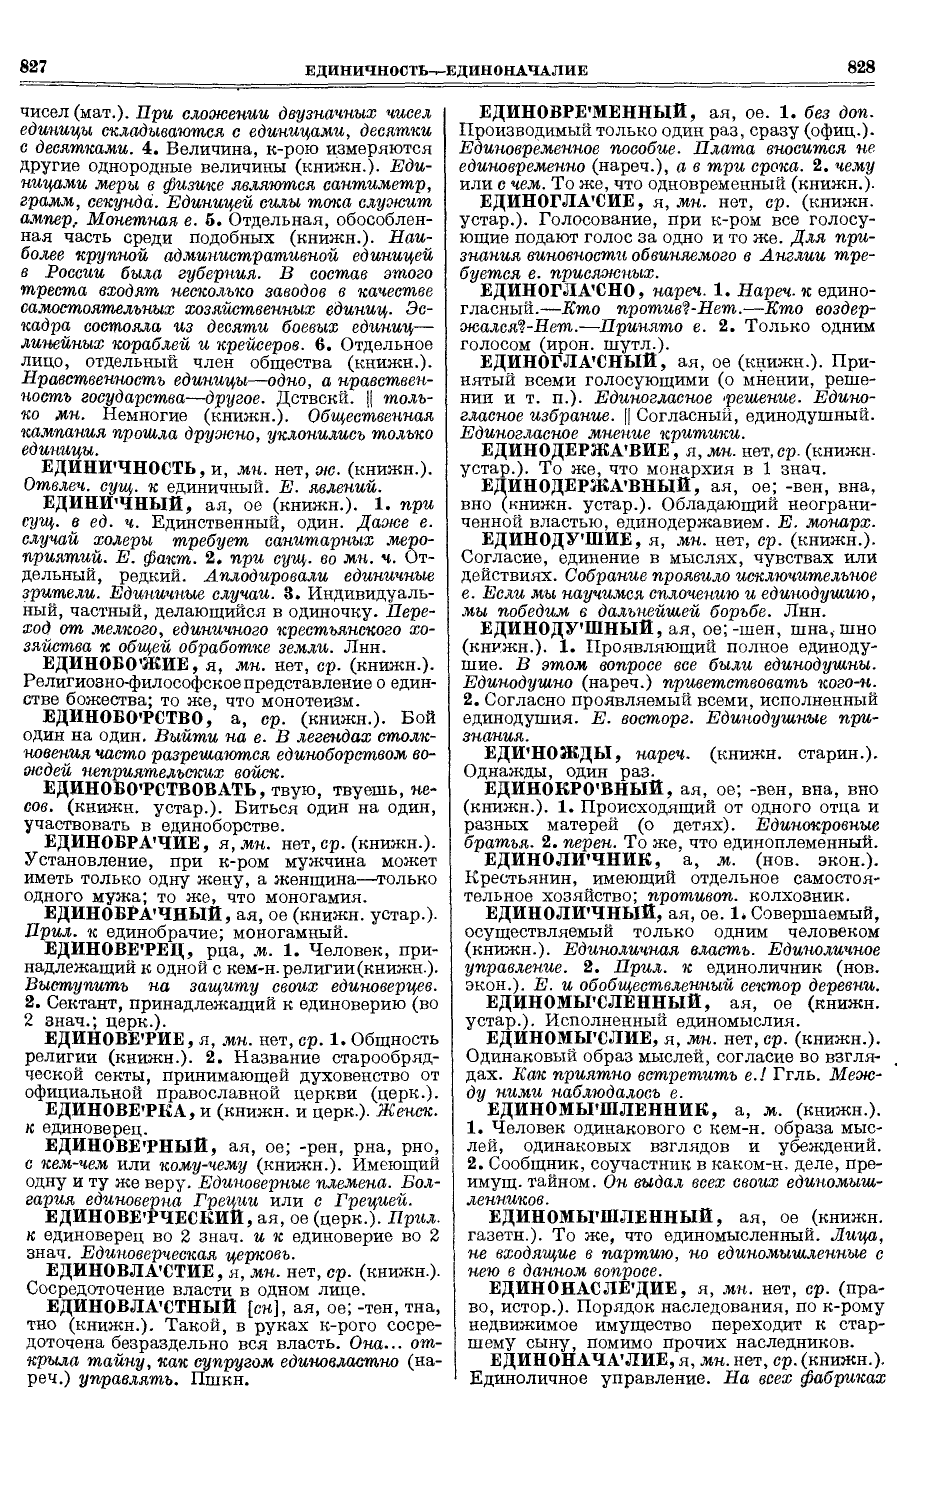 Фотокопия pdf / скан страницы 452 толкового словаря Ушакова (том 1)